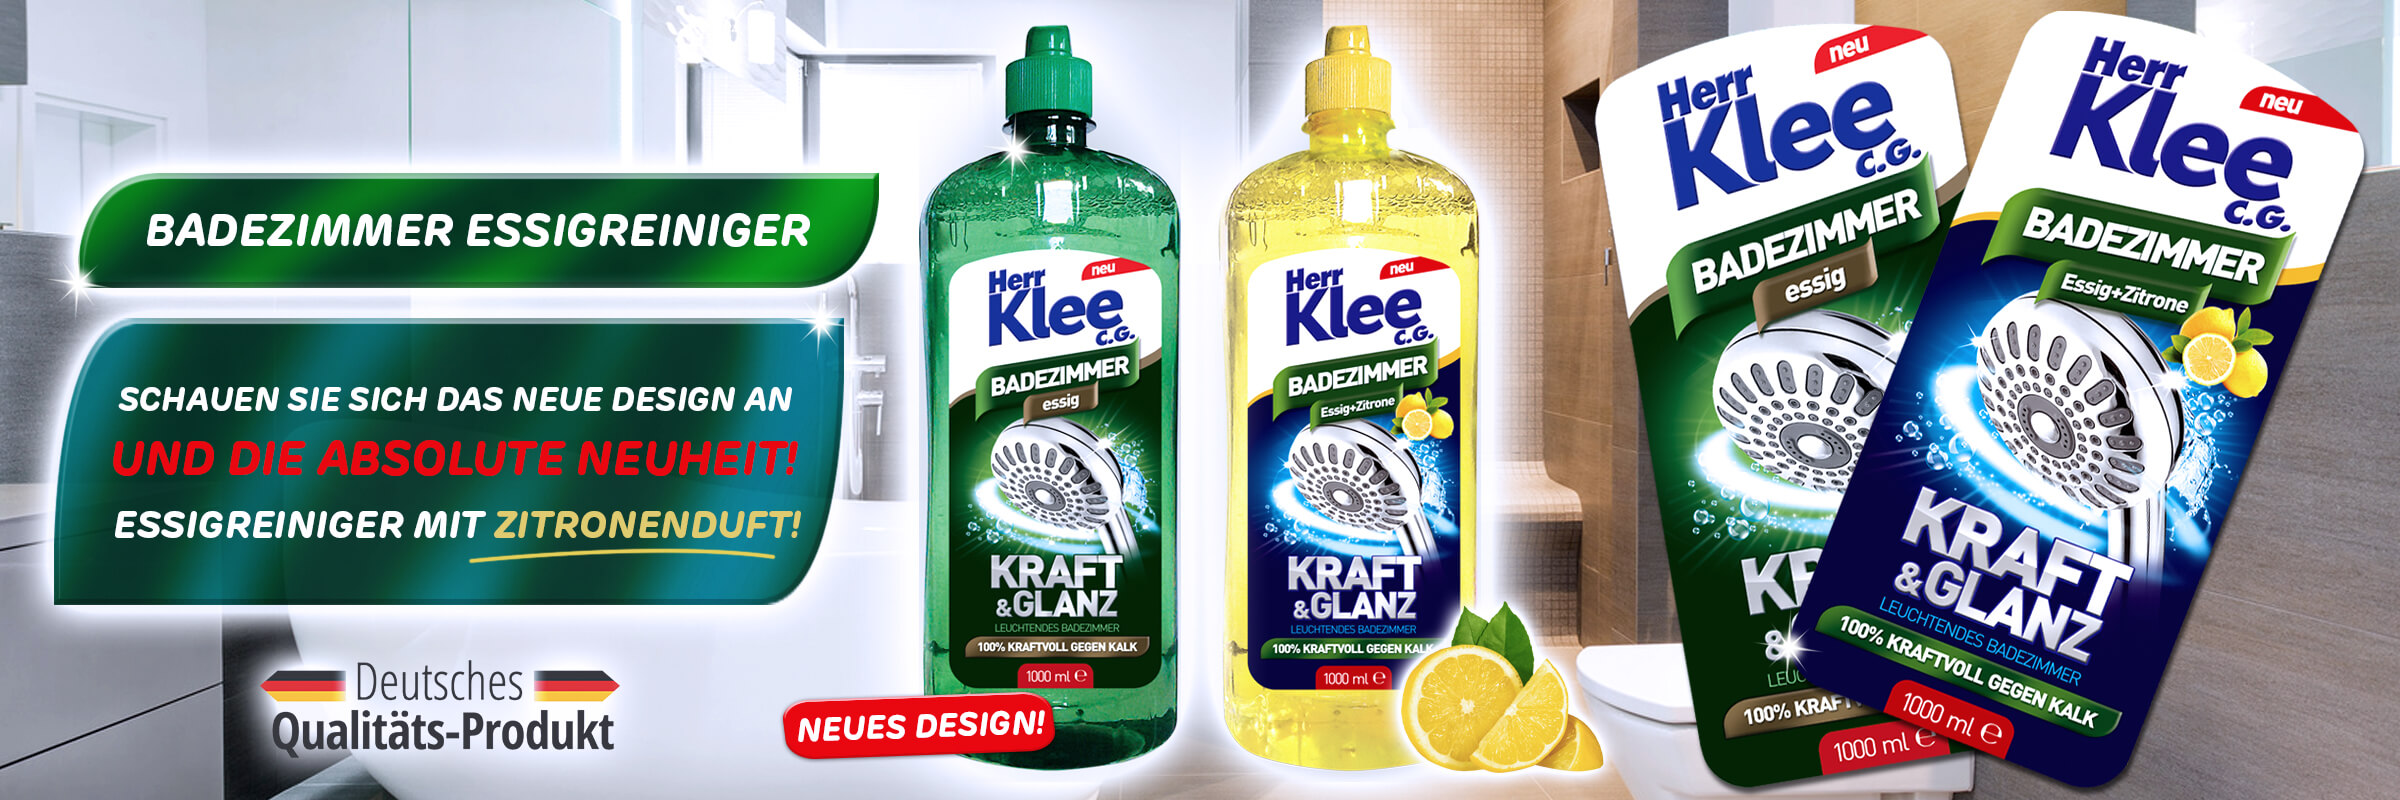 Neuheit! Essigreiniger für Badezimmer Herr Klee mit Zitronenduft!